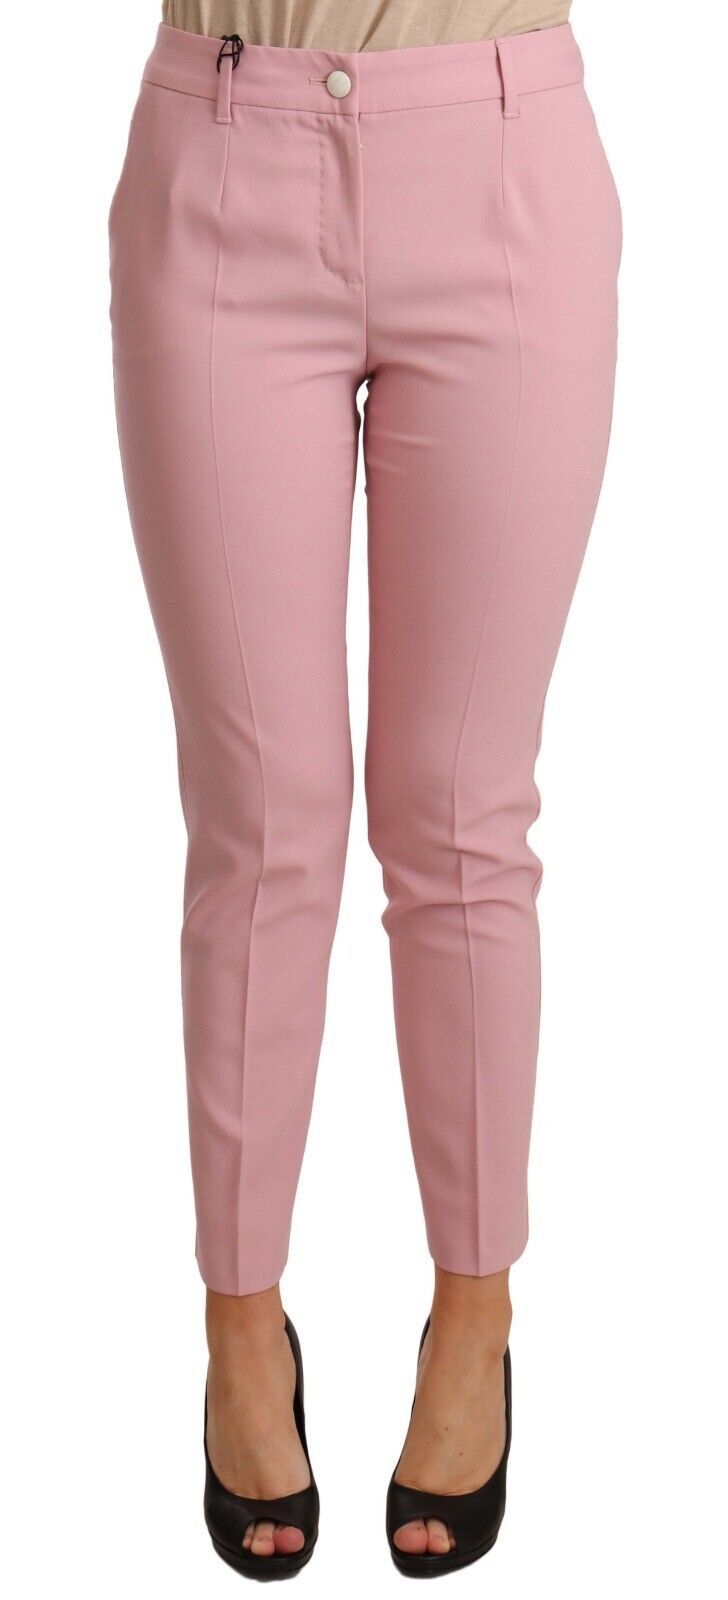 Dolce & Gabbana Pink Wool Stretch High Waist Trouser Women's Pants